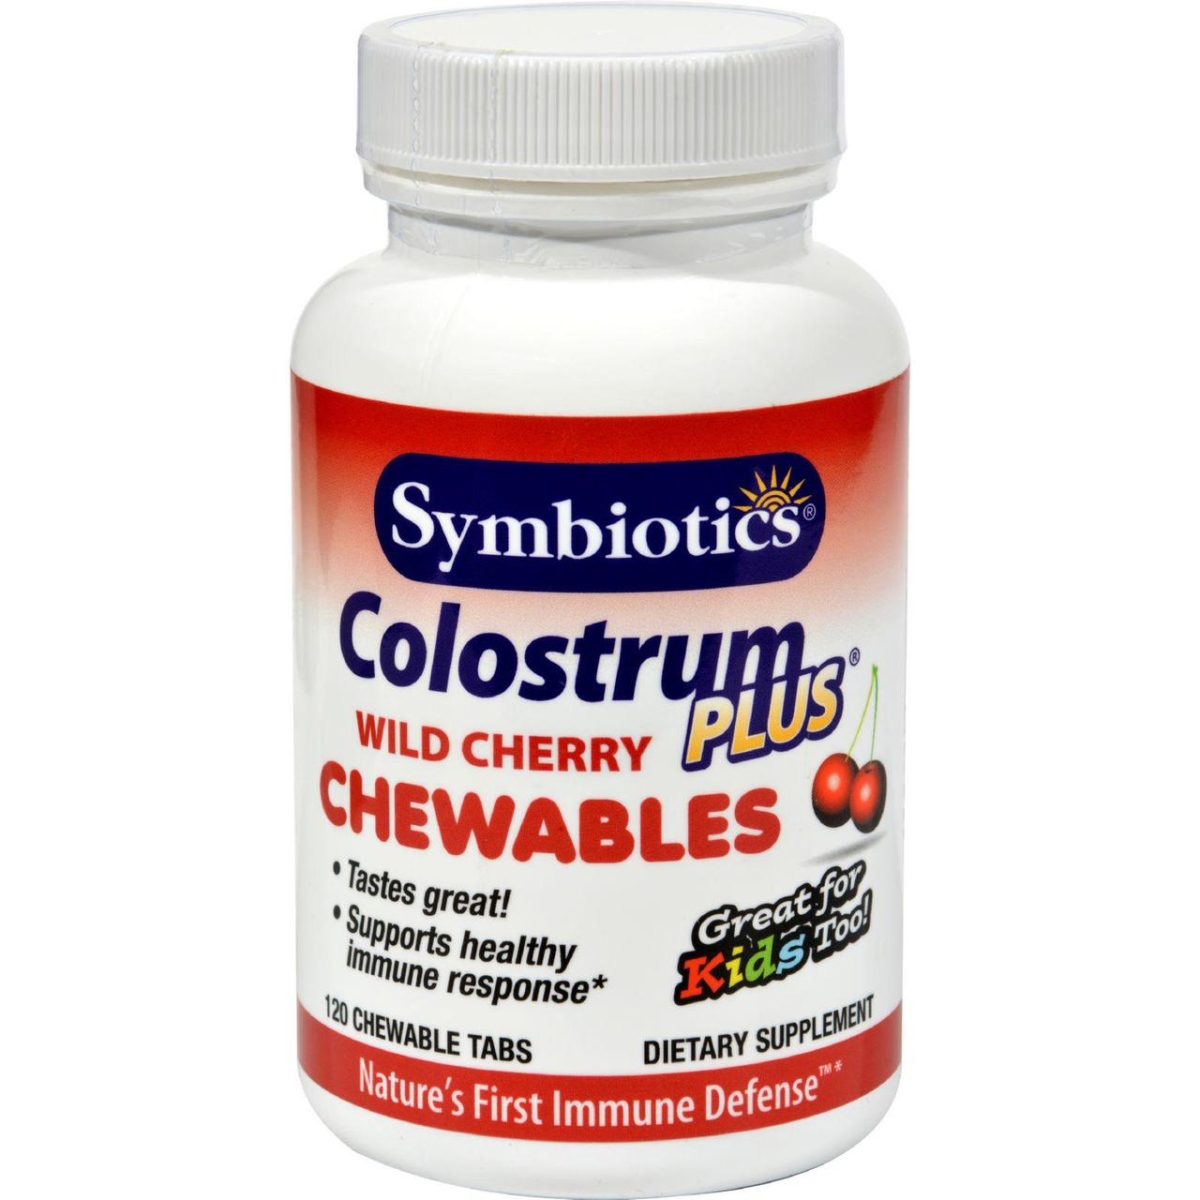 Hg0739714 1g Colostrum Plus Wild Cherry - 120 Chewables